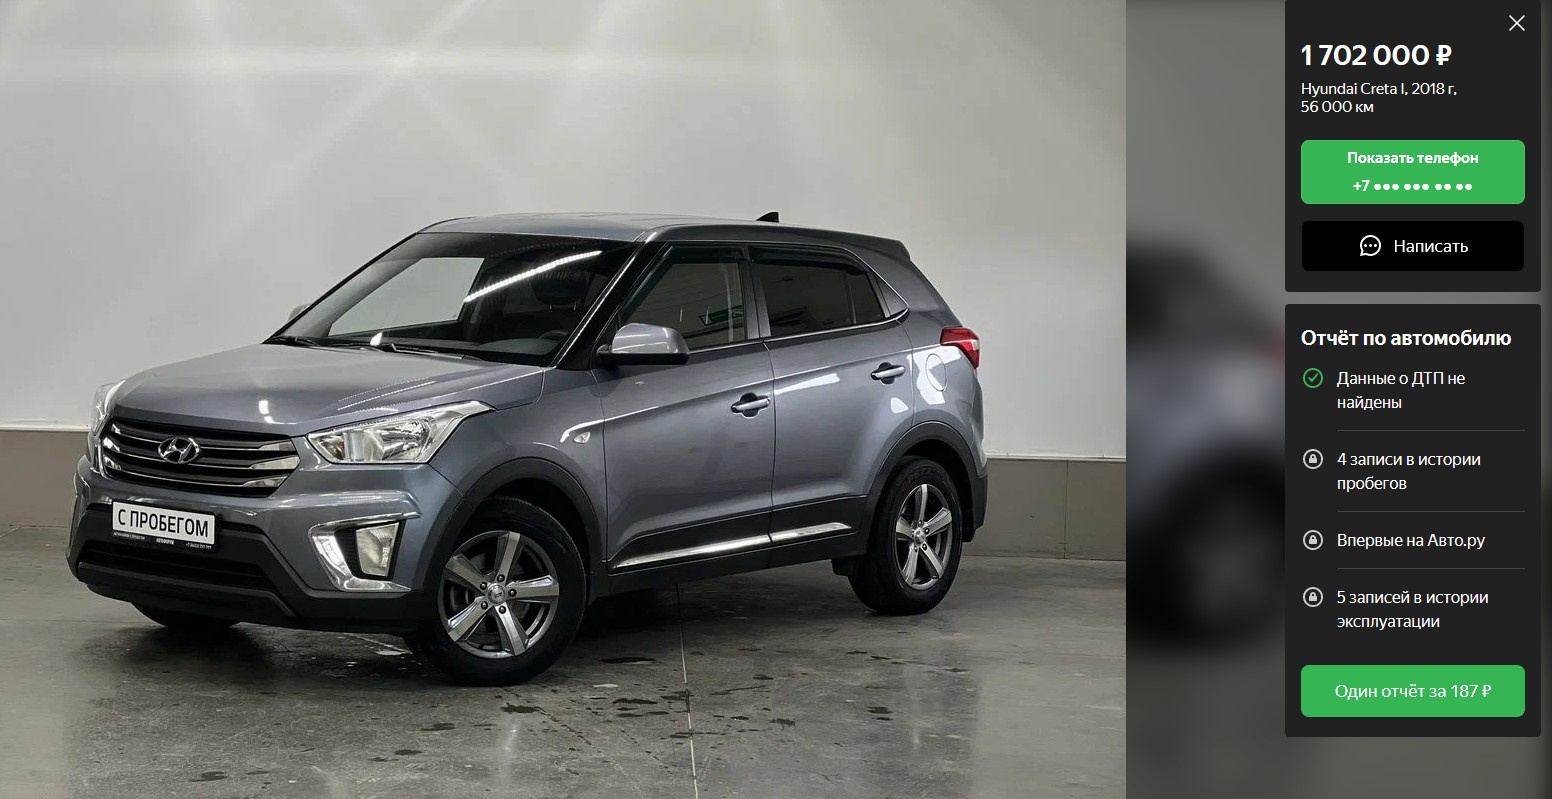 Hyundai Creta с одним владельцем и в хорошем (судя по отчету) состоянии. Двигатель — 1,6 литра, шестиступенчатый автомат, передний привод и средняя комплектация. Цена — 1,7 млн